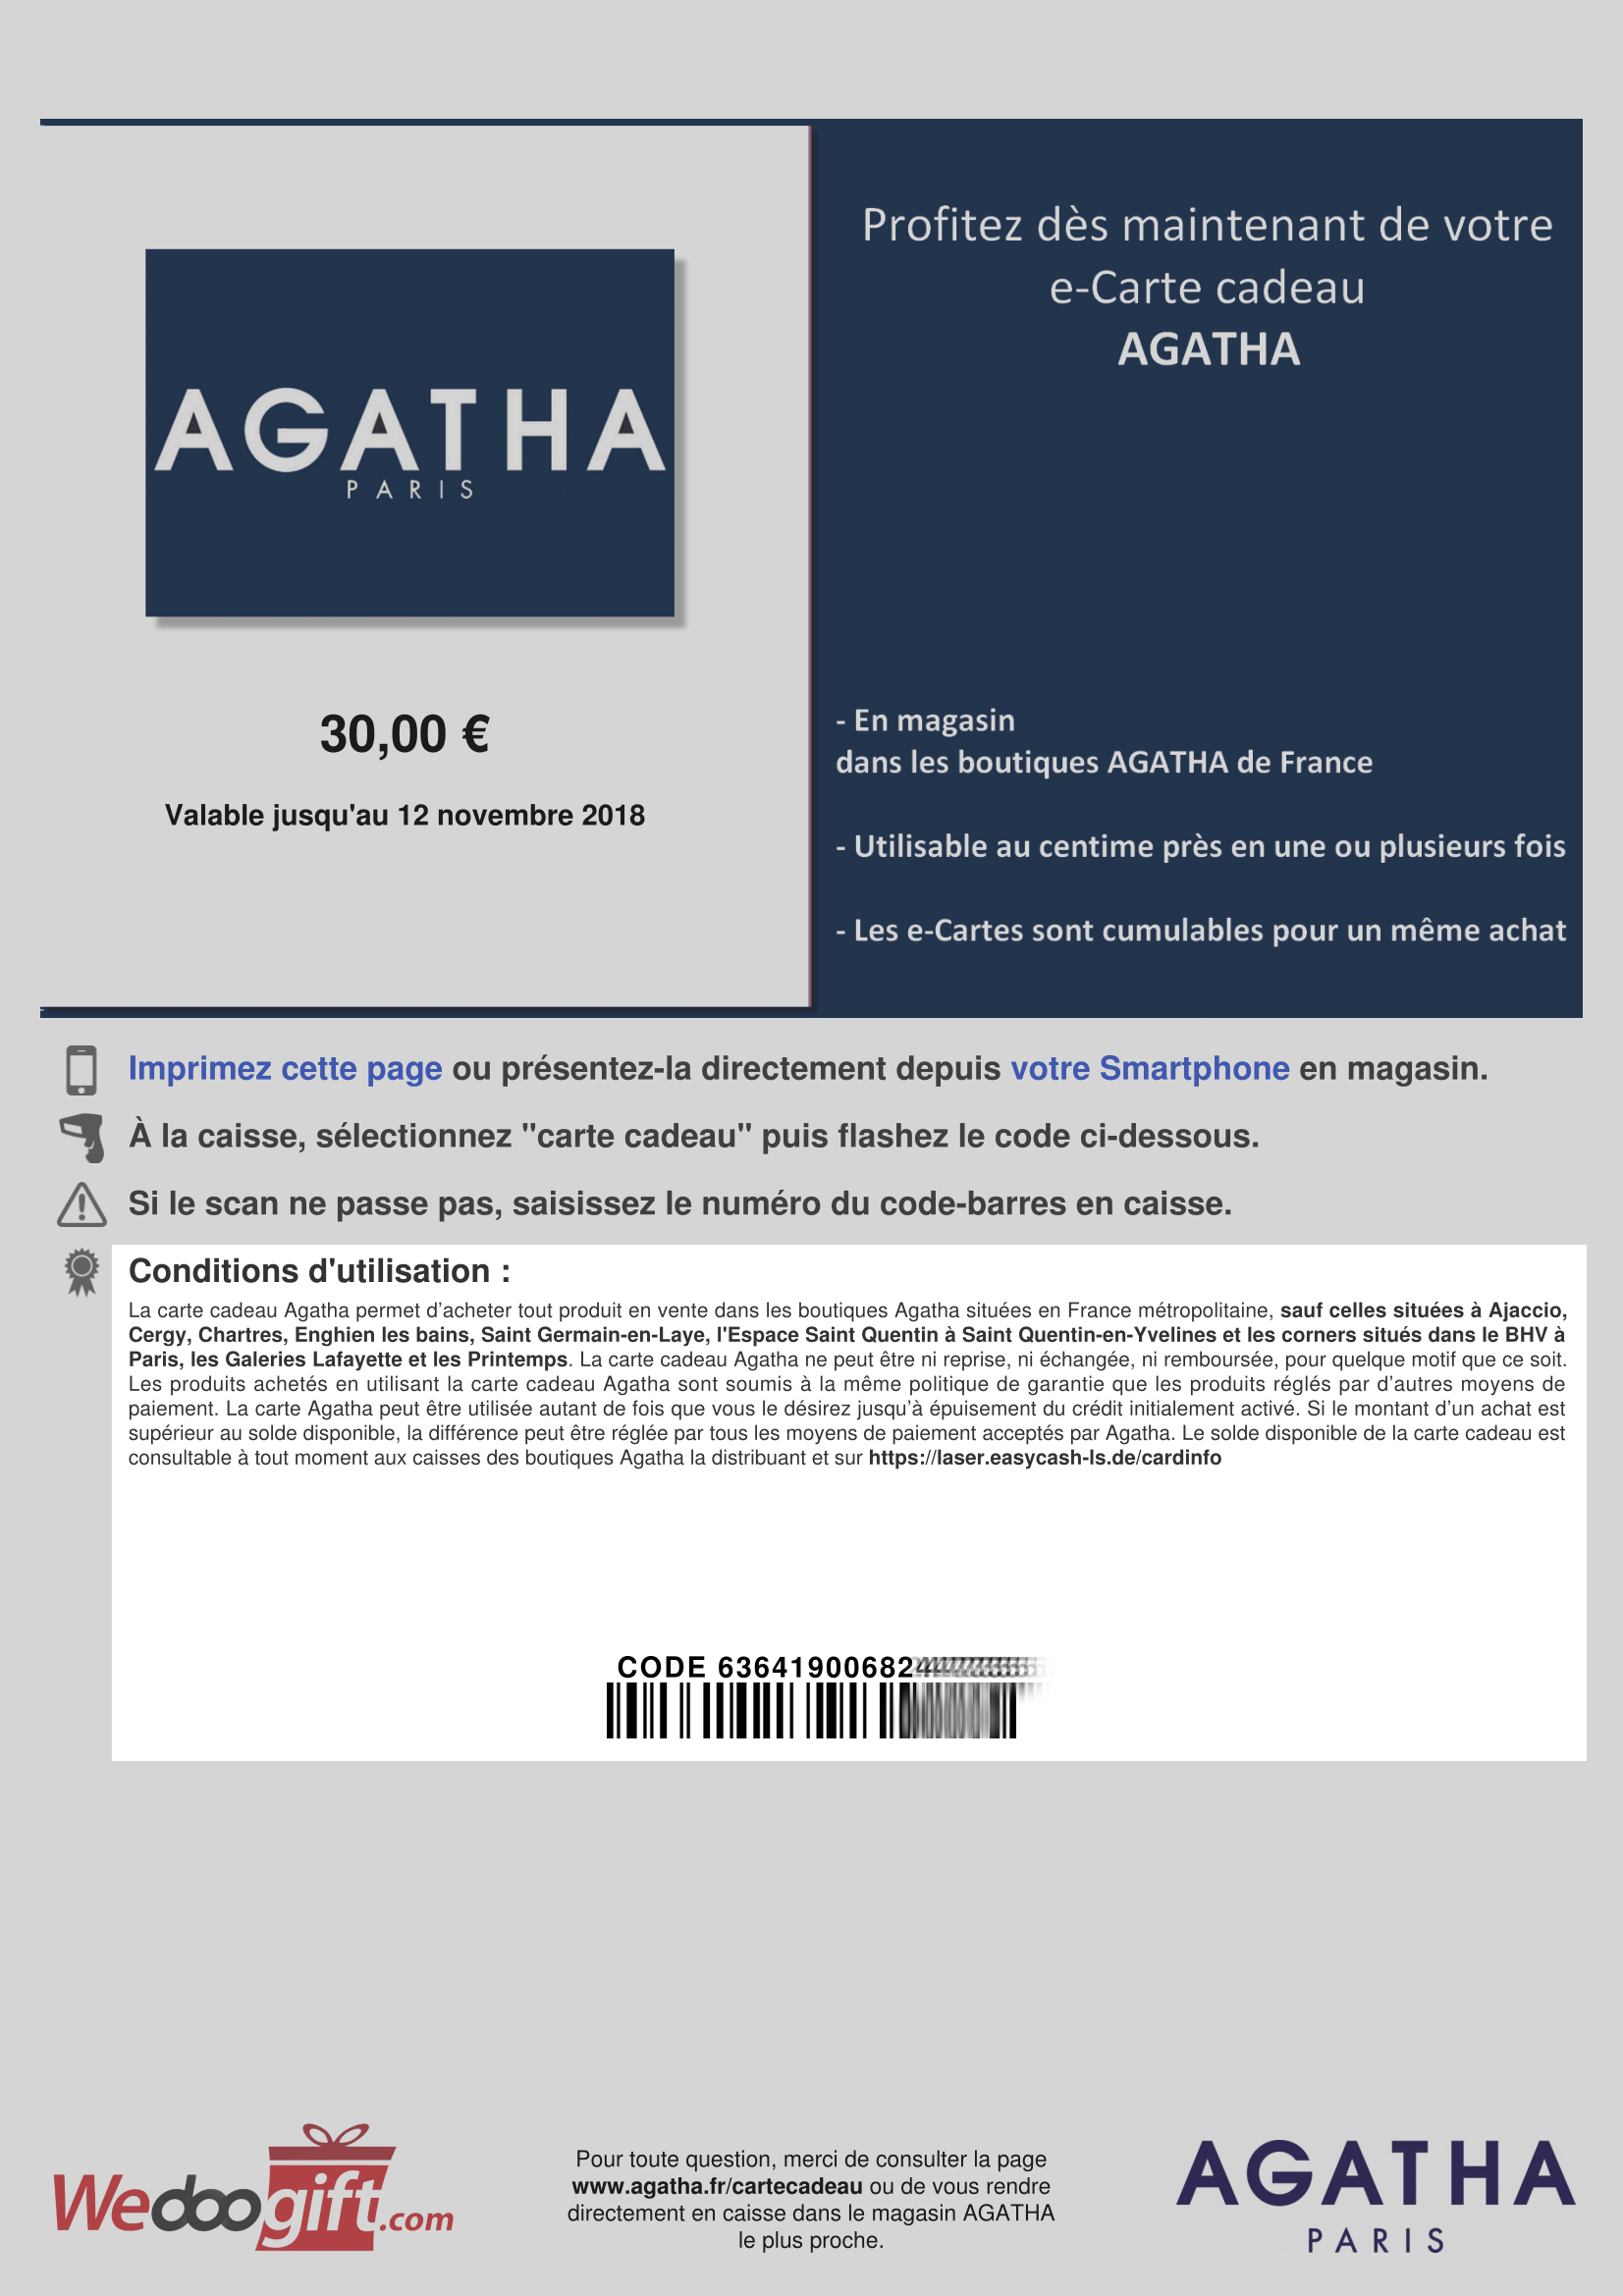 Bon_d_achat_Agatha_30_euros-1.png